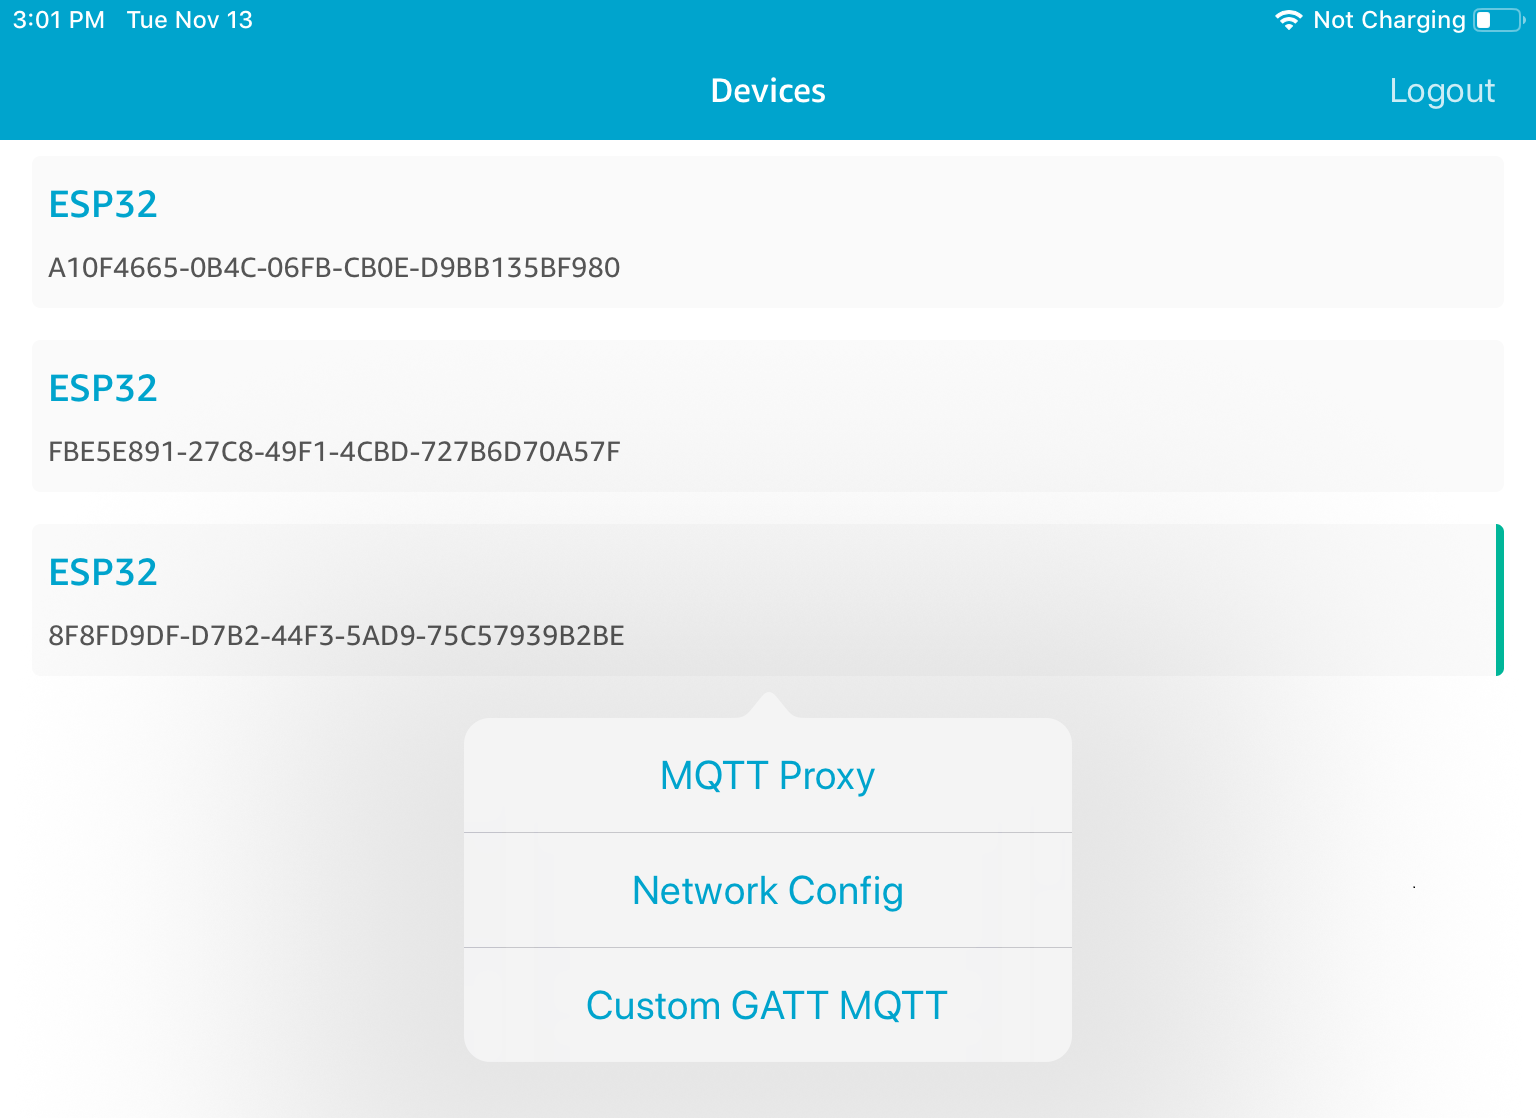 三个 ESP32 设备 ID 的列表，下面有 MQTT 代理、网络配置和自定义 GATT MQTT 选项。